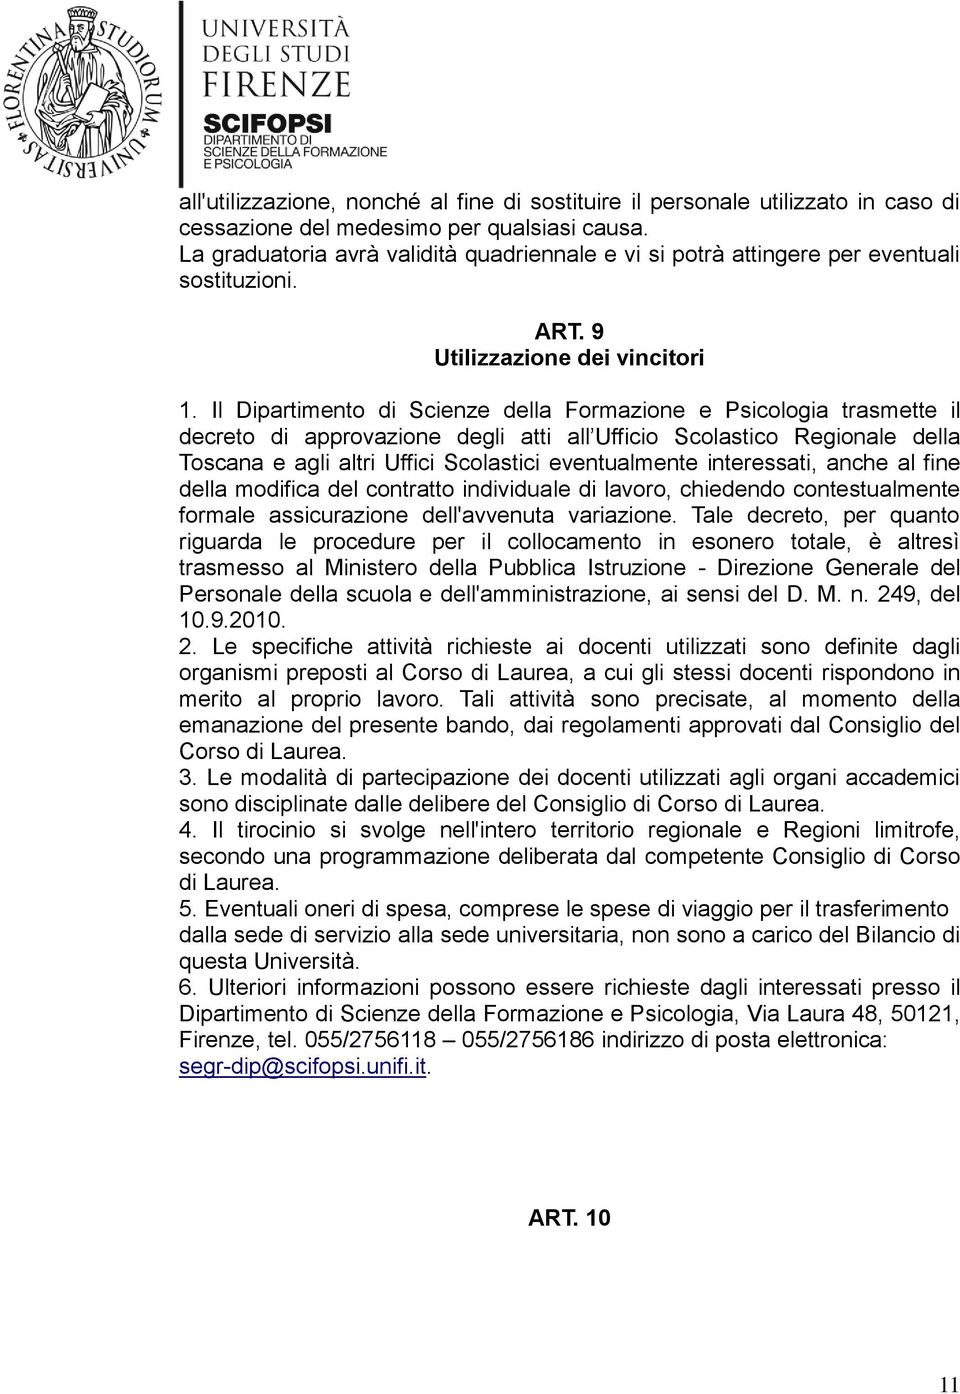 Il Dipartimento di Scienze della Formazione e Psicologia trasmette il decreto di approvazione degli atti all Ufficio Scolastico Regionale della Toscana e agli altri Uffici Scolastici eventualmente